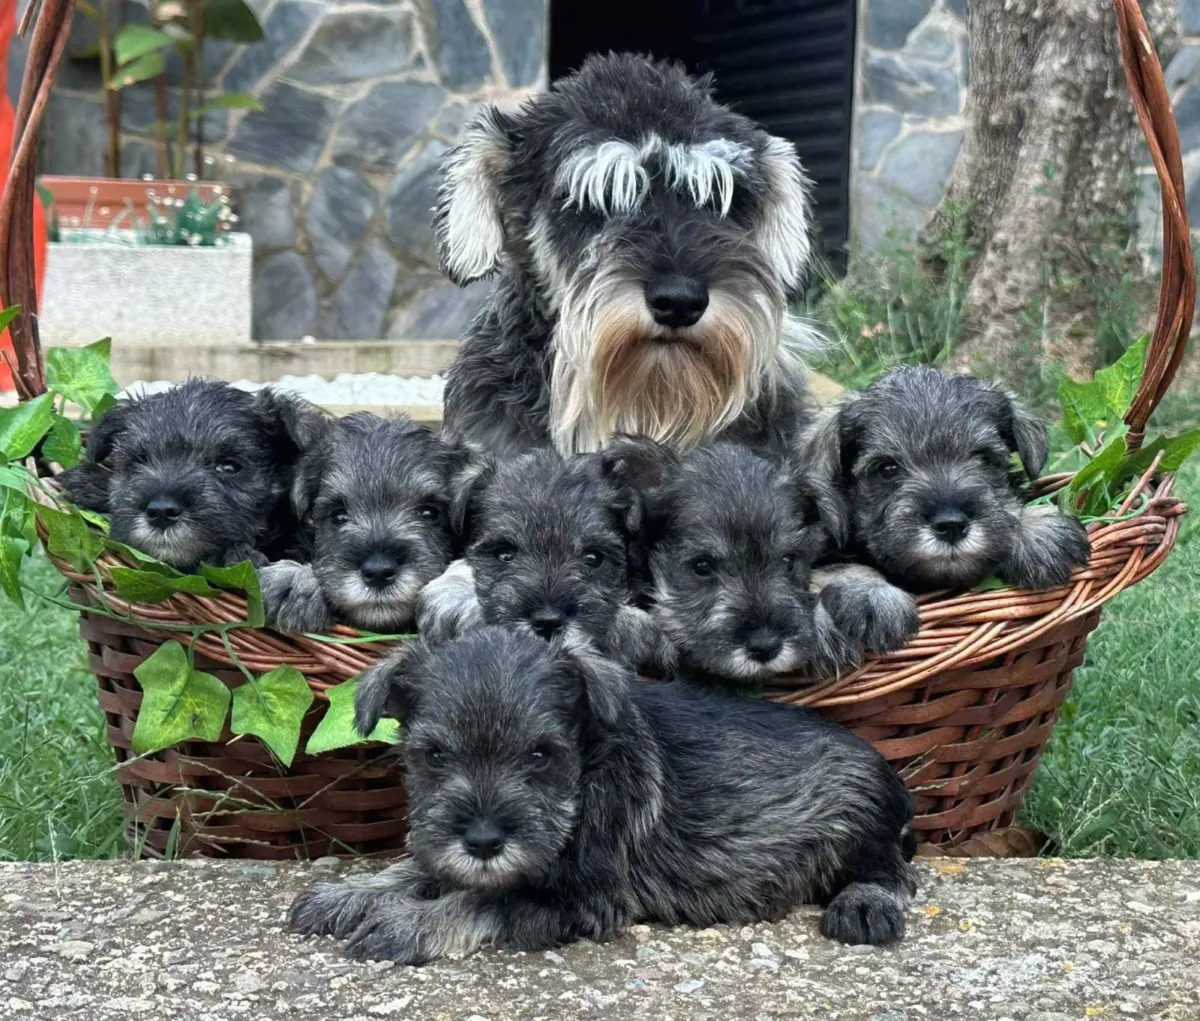 Cachorros de schnauzer miniatura en una cesta junto a su madre